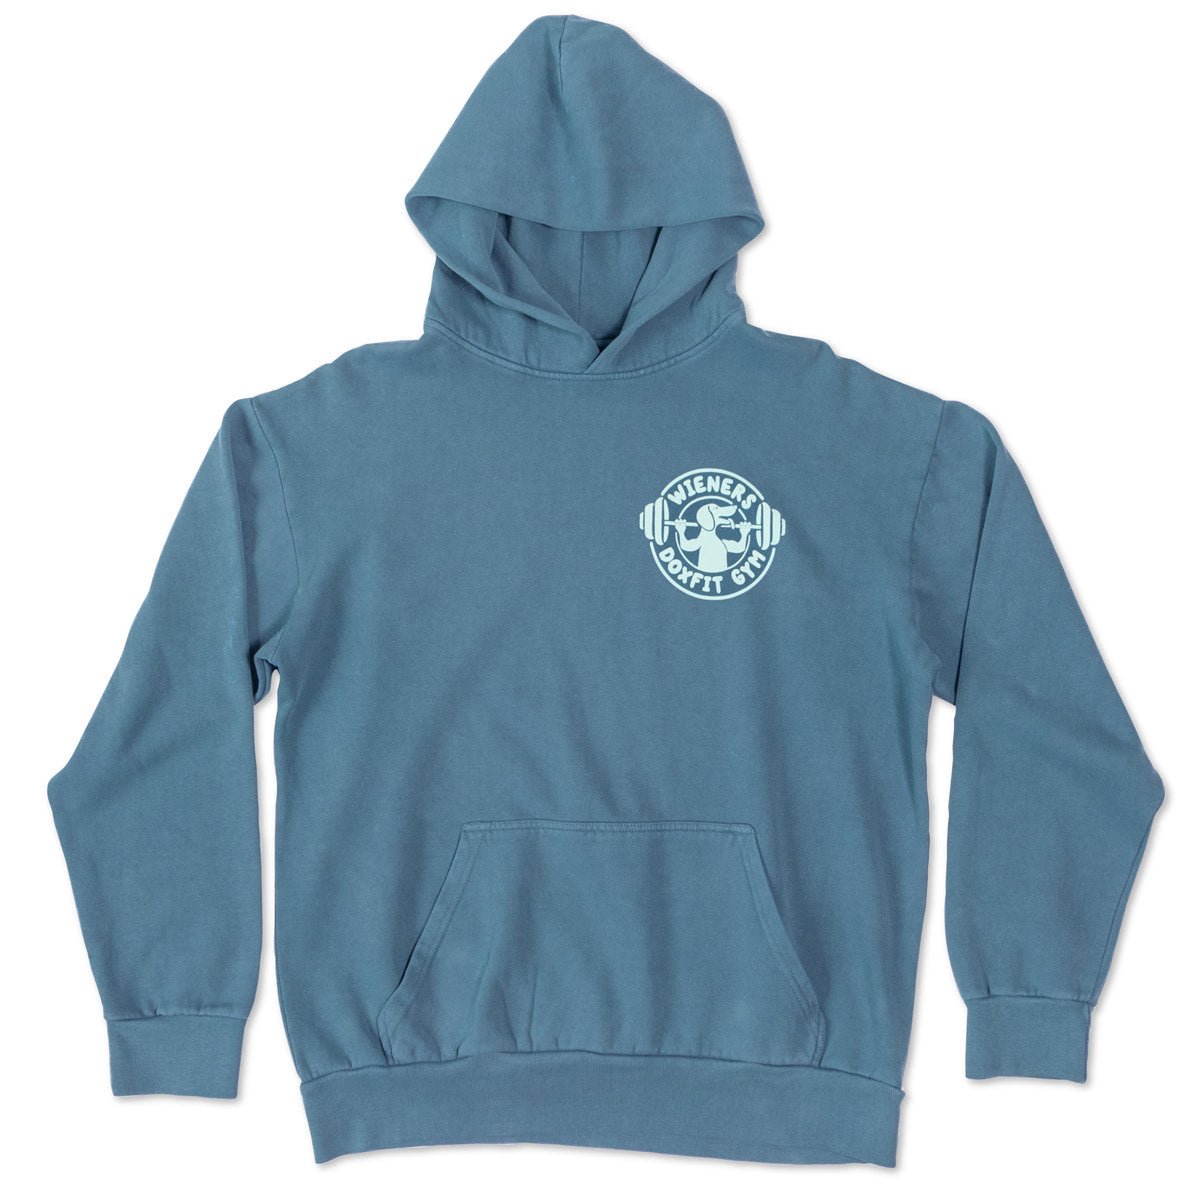 doxfit unisex hoodie sweatshirt - bean goods